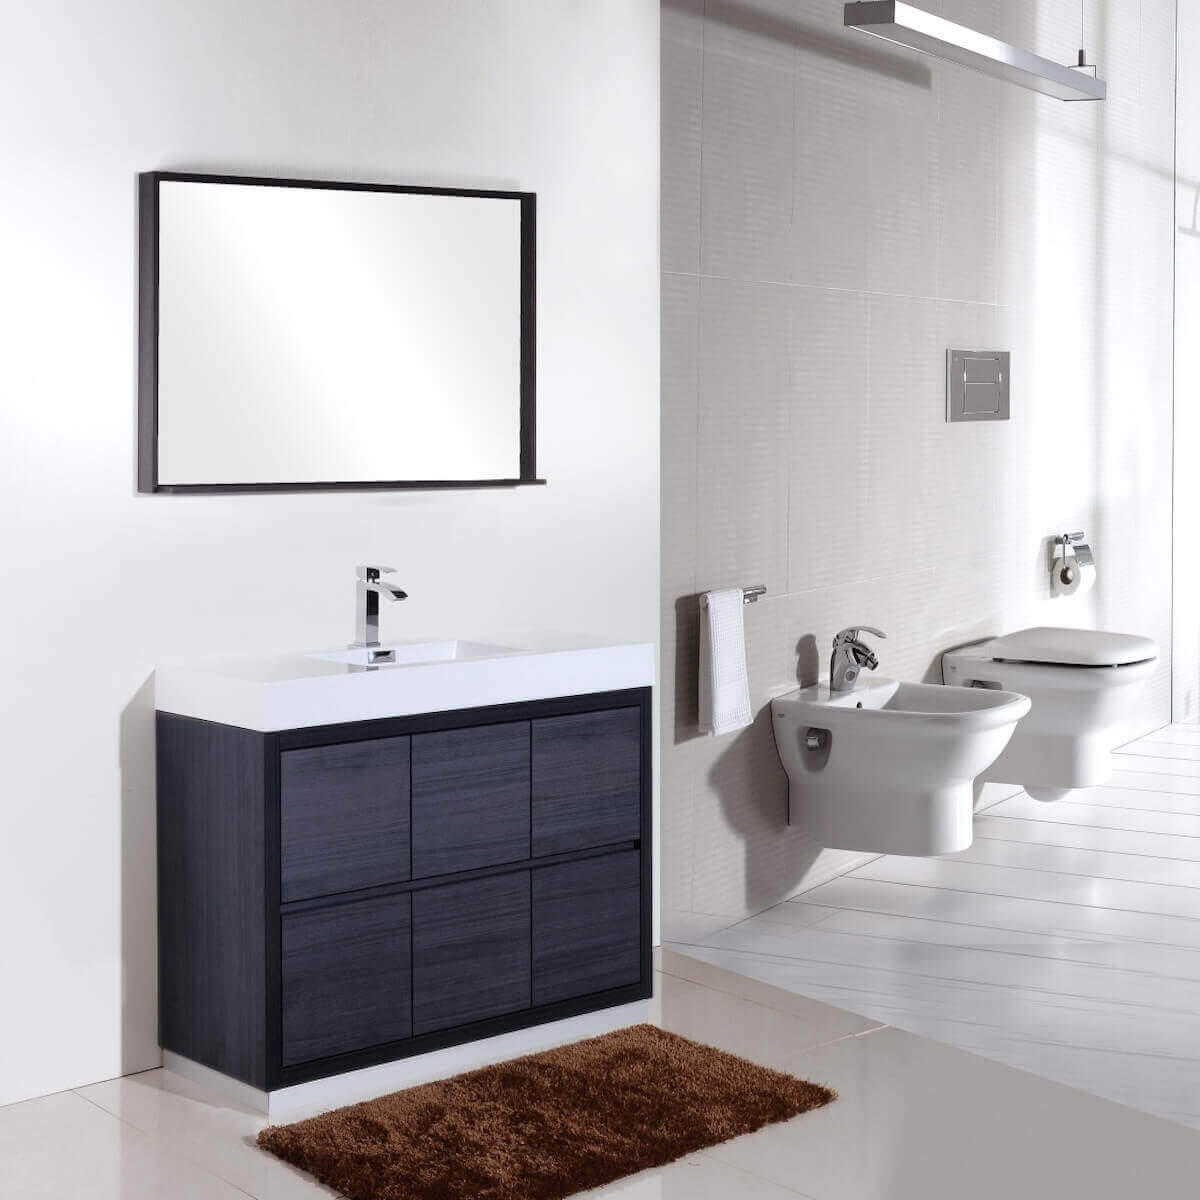 KubeBath Bliss 60" Gray Oak Freestanding Single Vanity FMB60S-GO in Bathroom #finish_gray oak